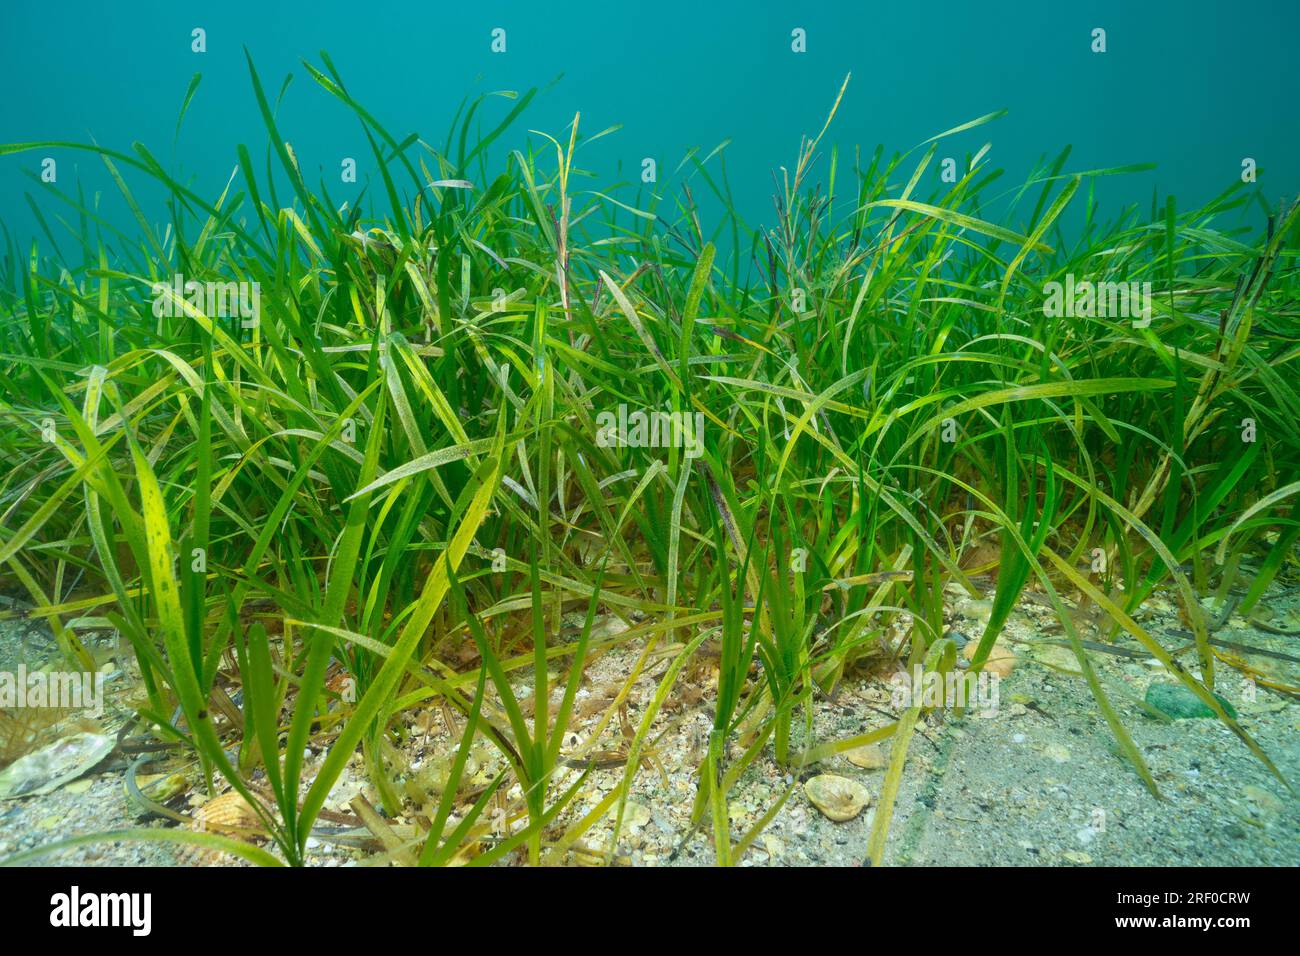 Herbes marines, Zostera marina, sous l'eau dans l'océan Atlantique, scène naturelle, Espagne, Galice Banque D'Images